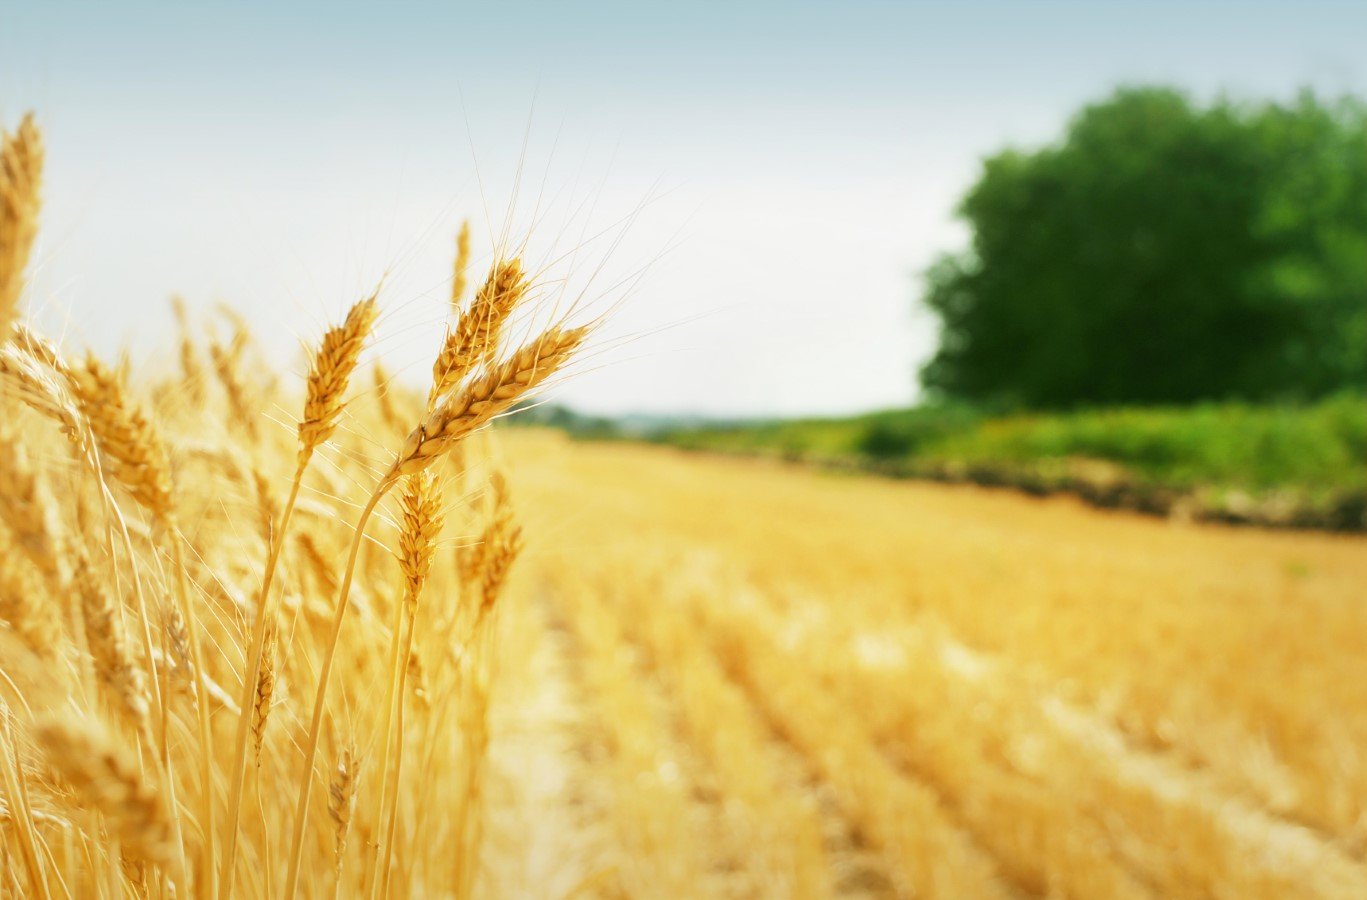 Աշնանացան ցորենի արտադրության խթանման 2021թ. պետական աջակցության ծրագիրը կիրականացվի բոլոր մարզերում